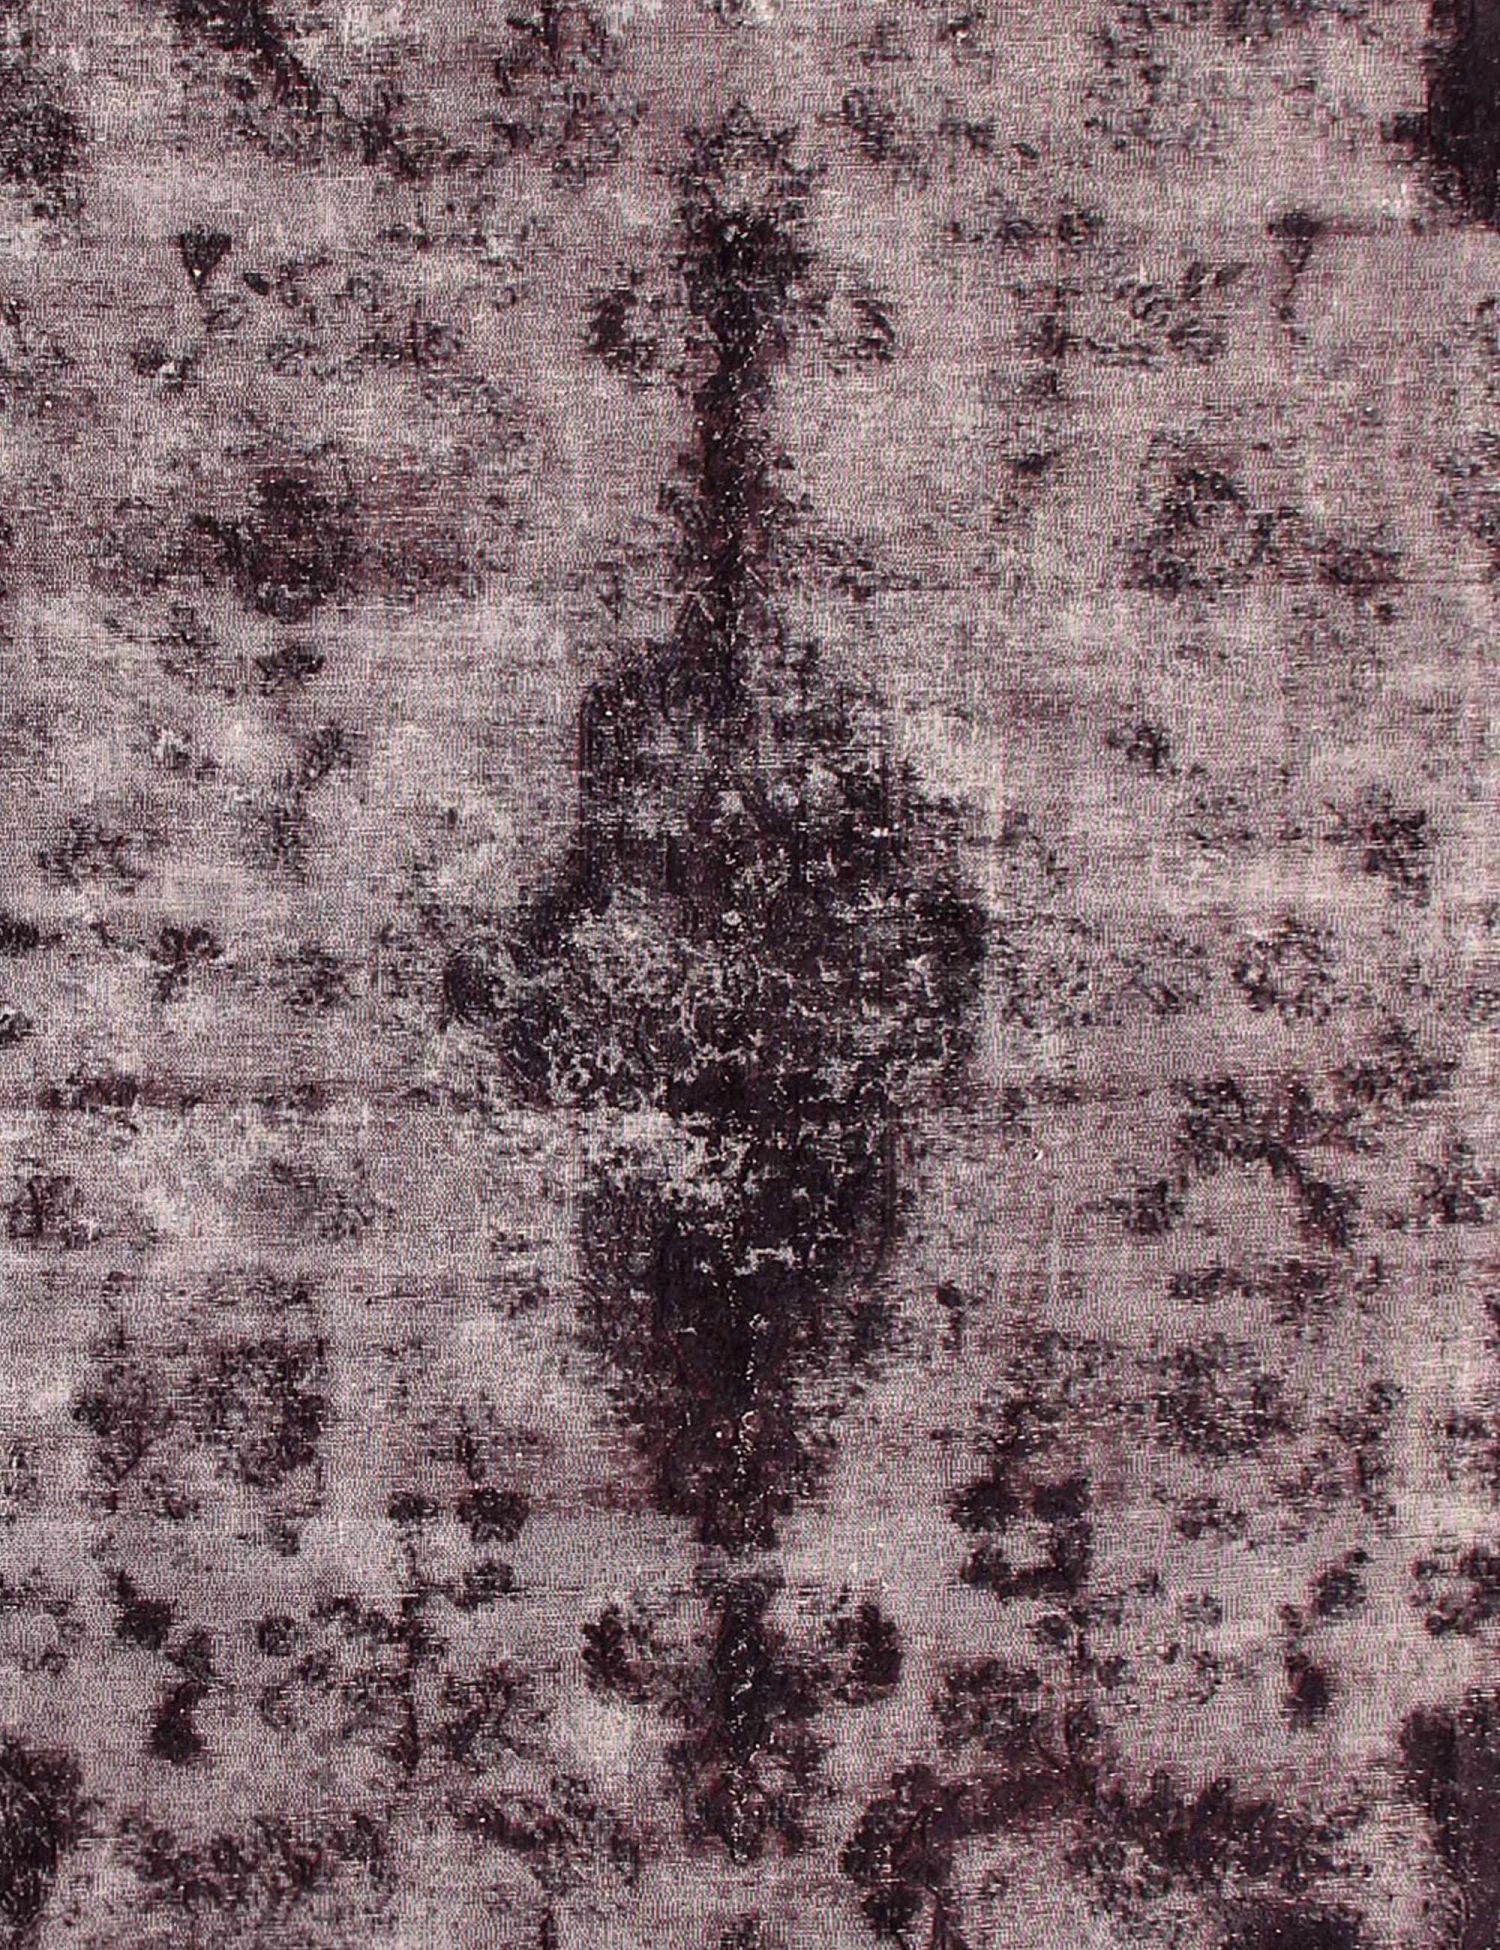 Persischer Vintage Teppich  schwarz <br/>262 x 262 cm